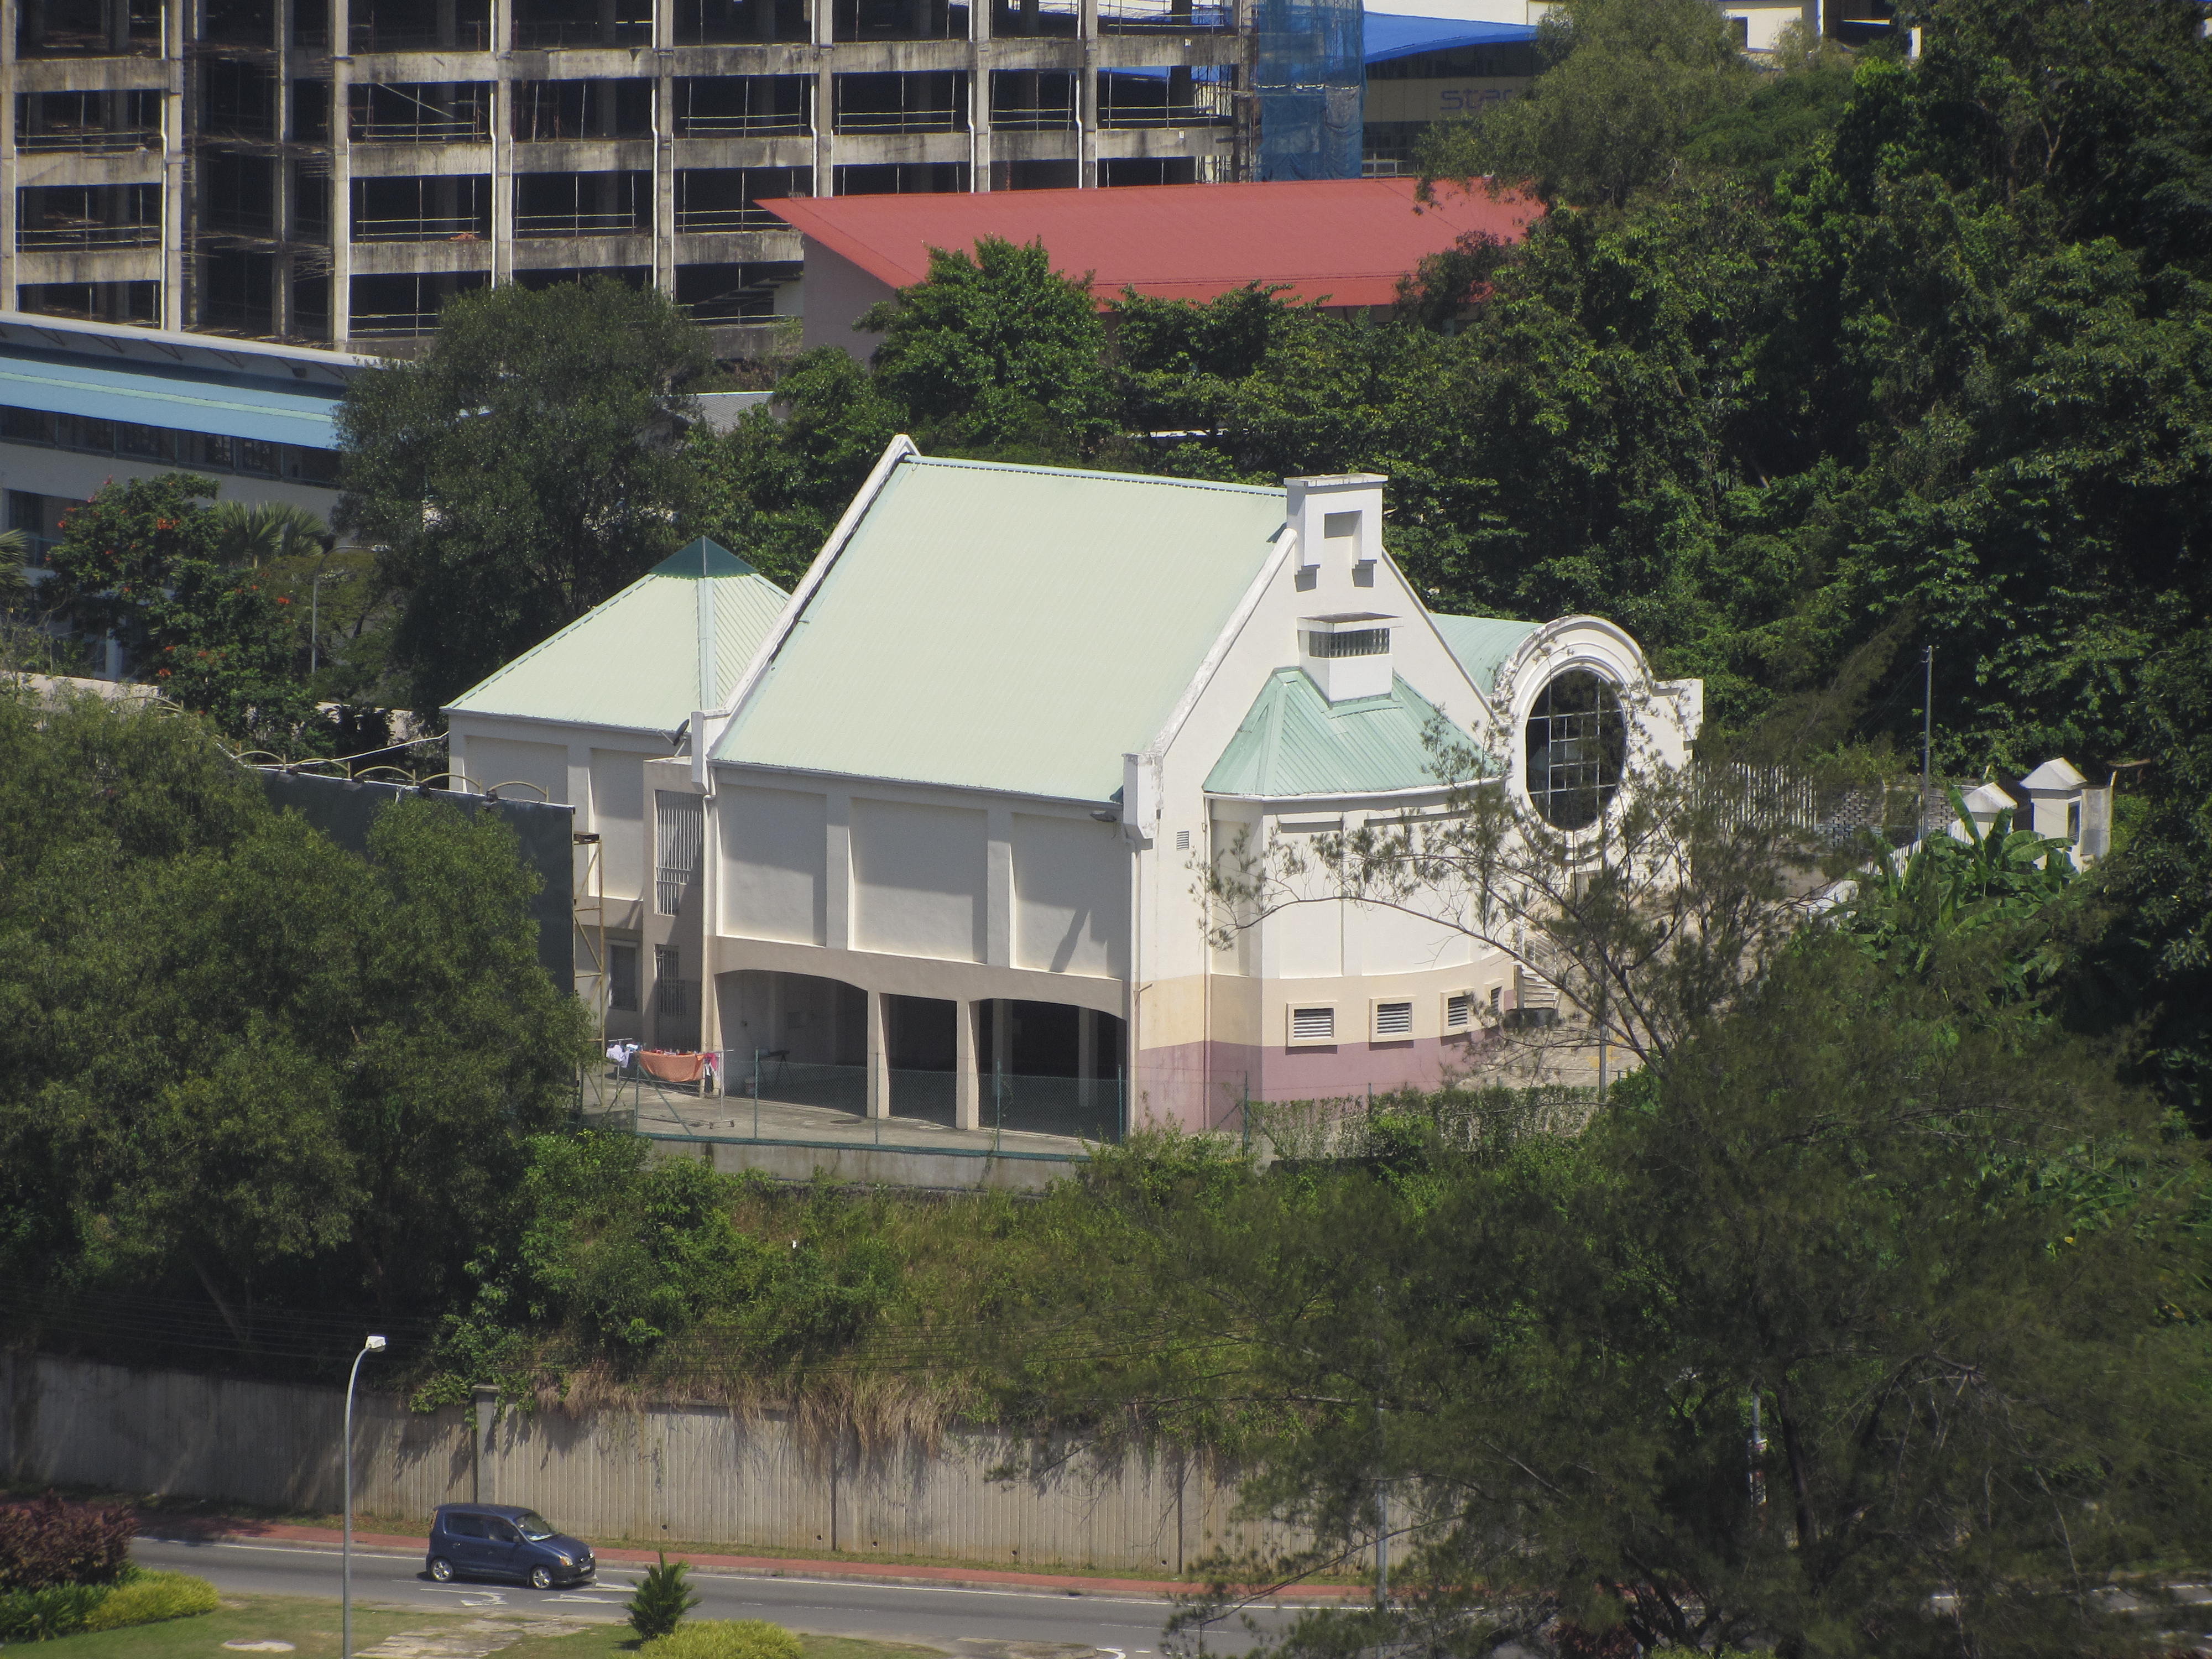 Freemason building in malaysia